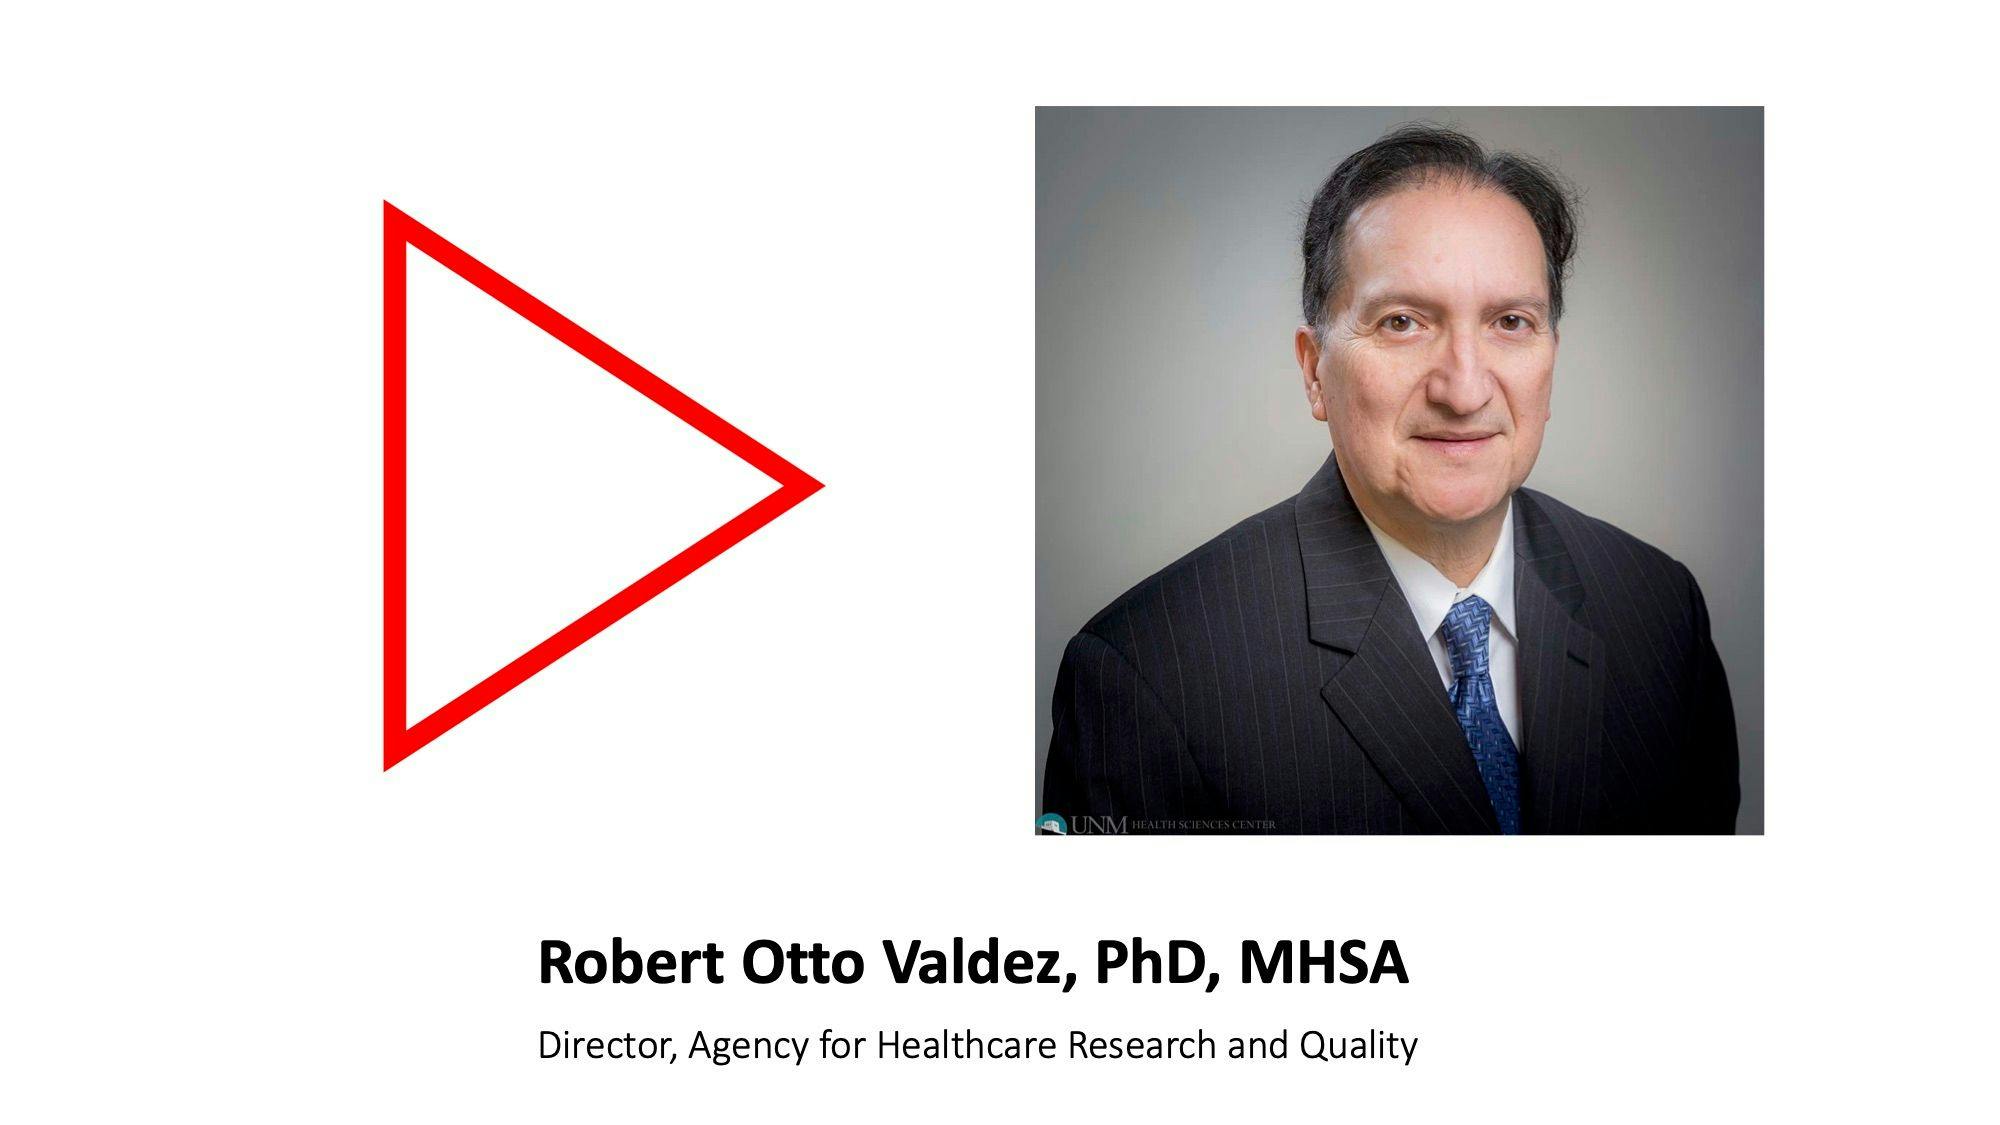 Robert Otto Valdez, PhD, MHSA, gives expert advice